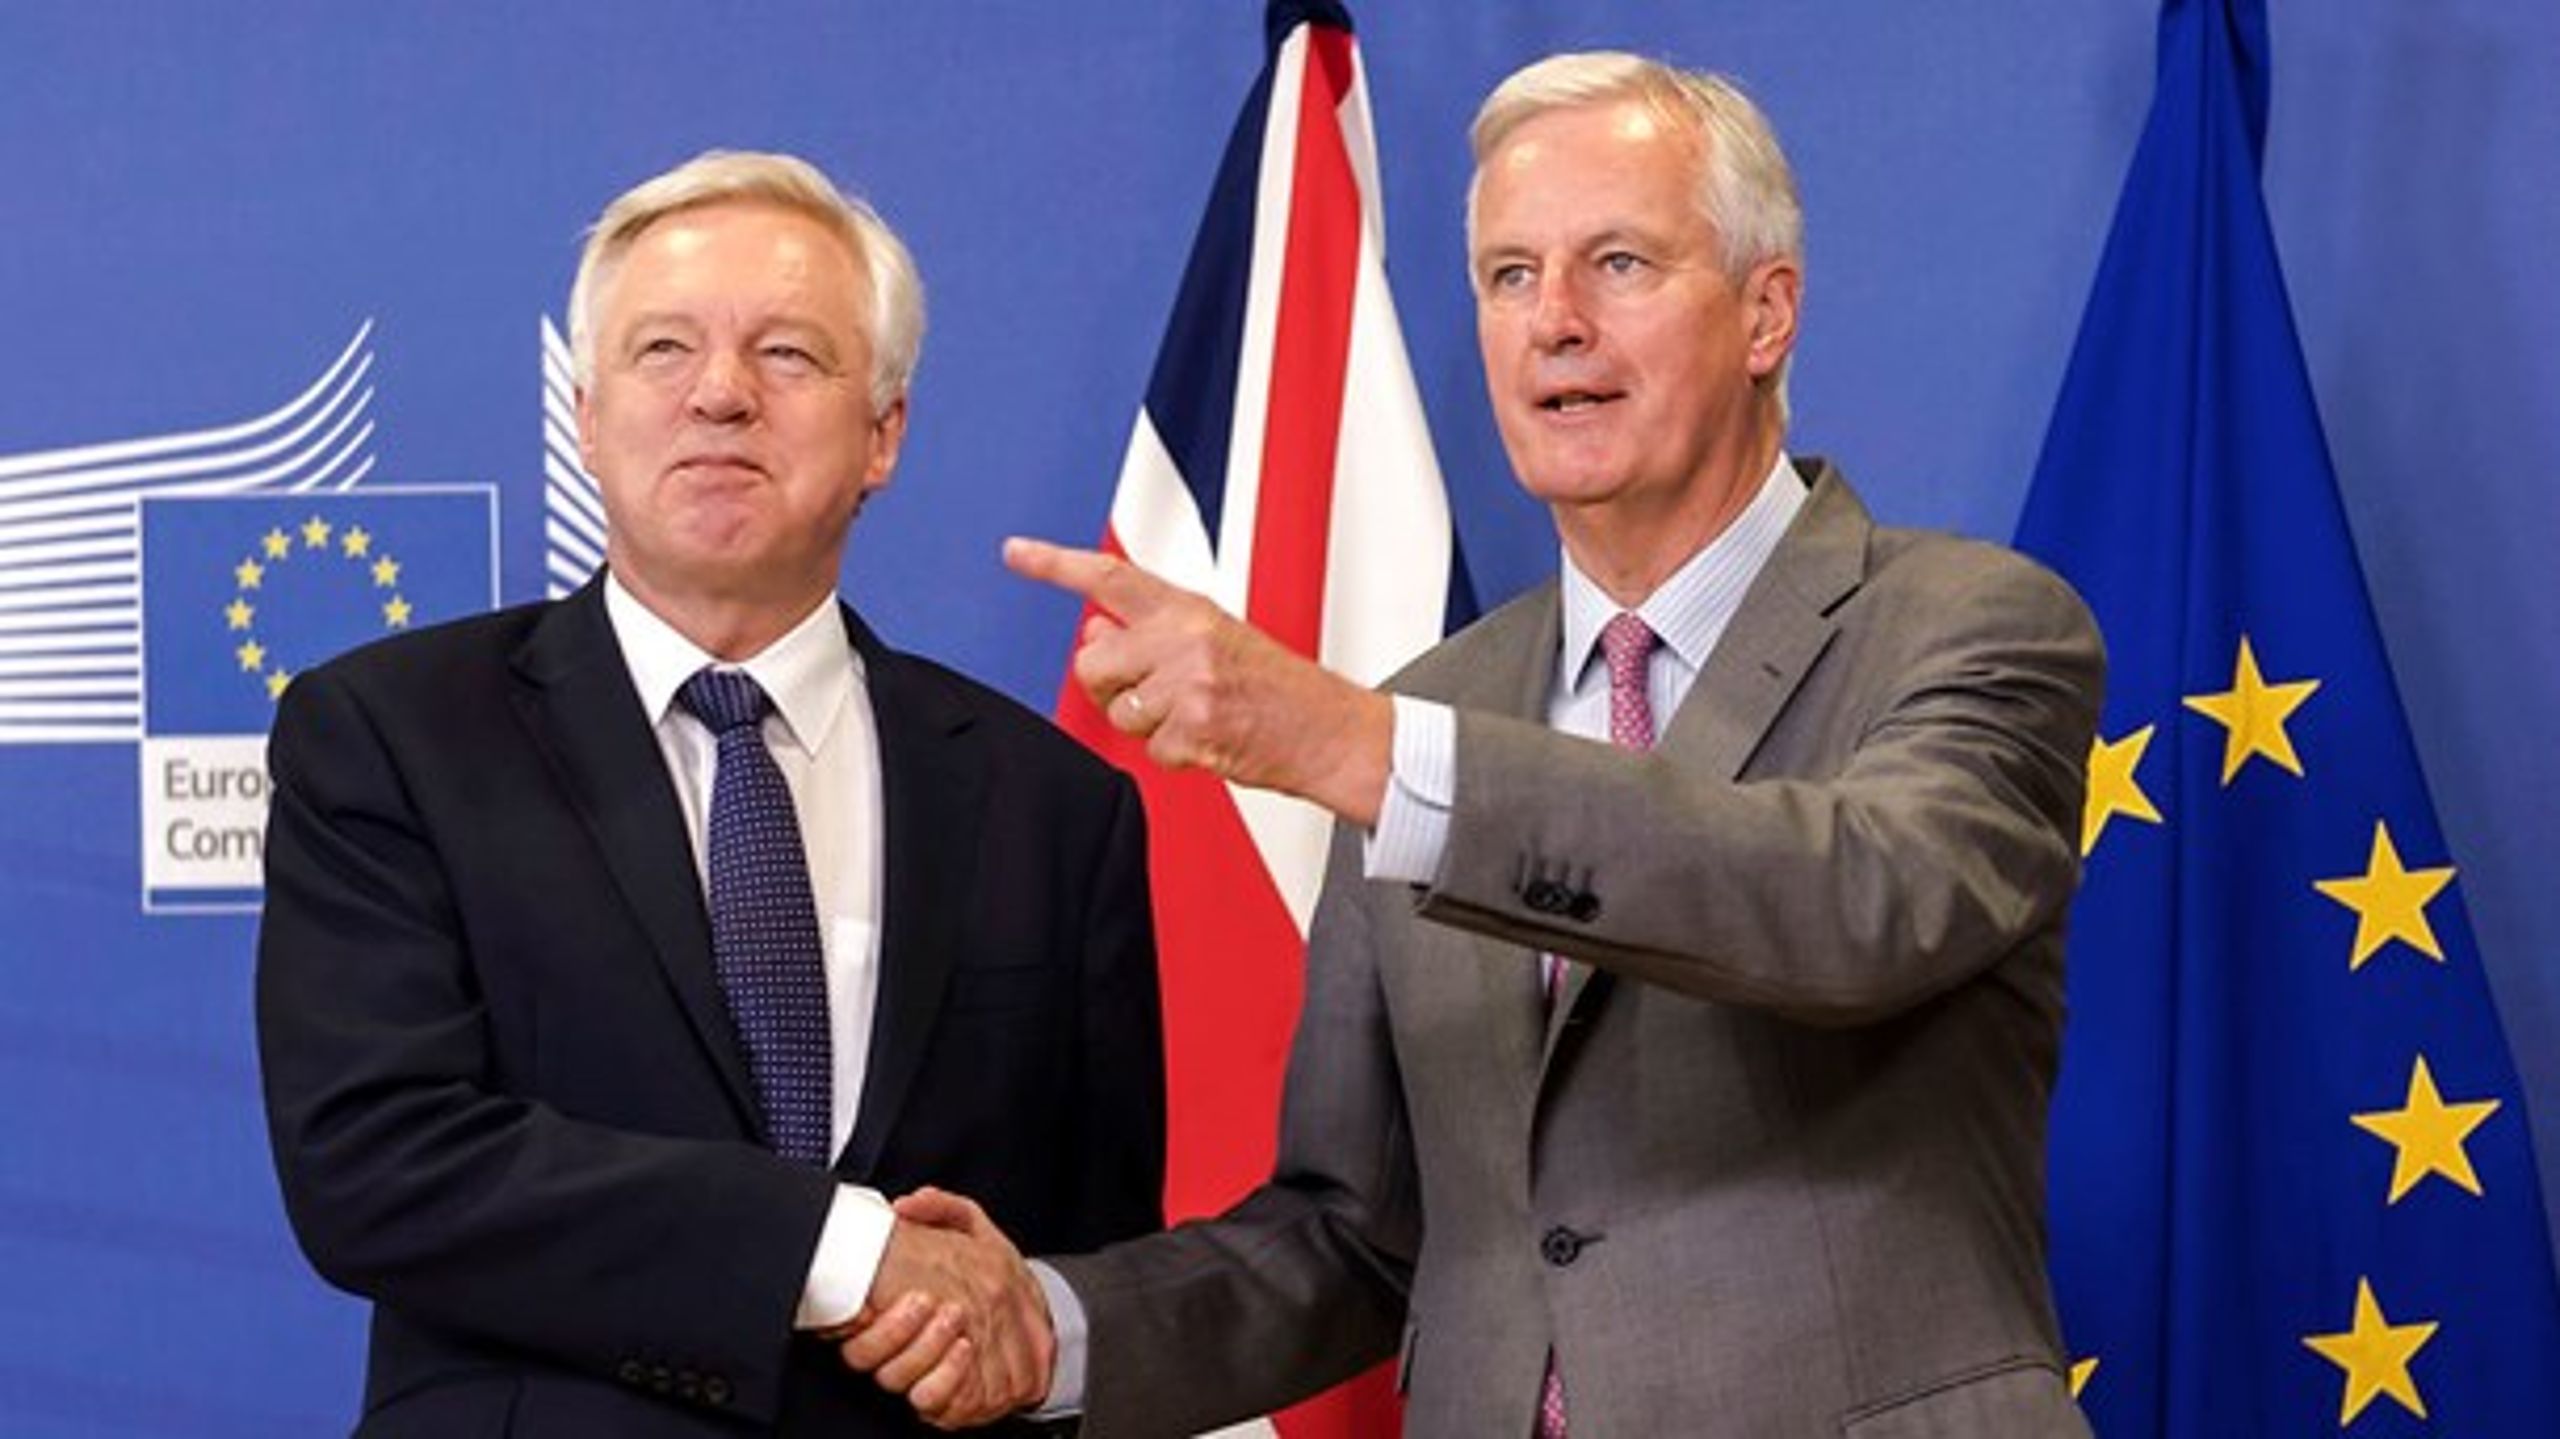 EU's og Storbritanniens Brexit-forhandlere, Michel Barnier (t.h.) og David Davis (t.v.) mødes for første gang i år i forsøget på at få briternes skilsmisseforhandlinger på skinner.